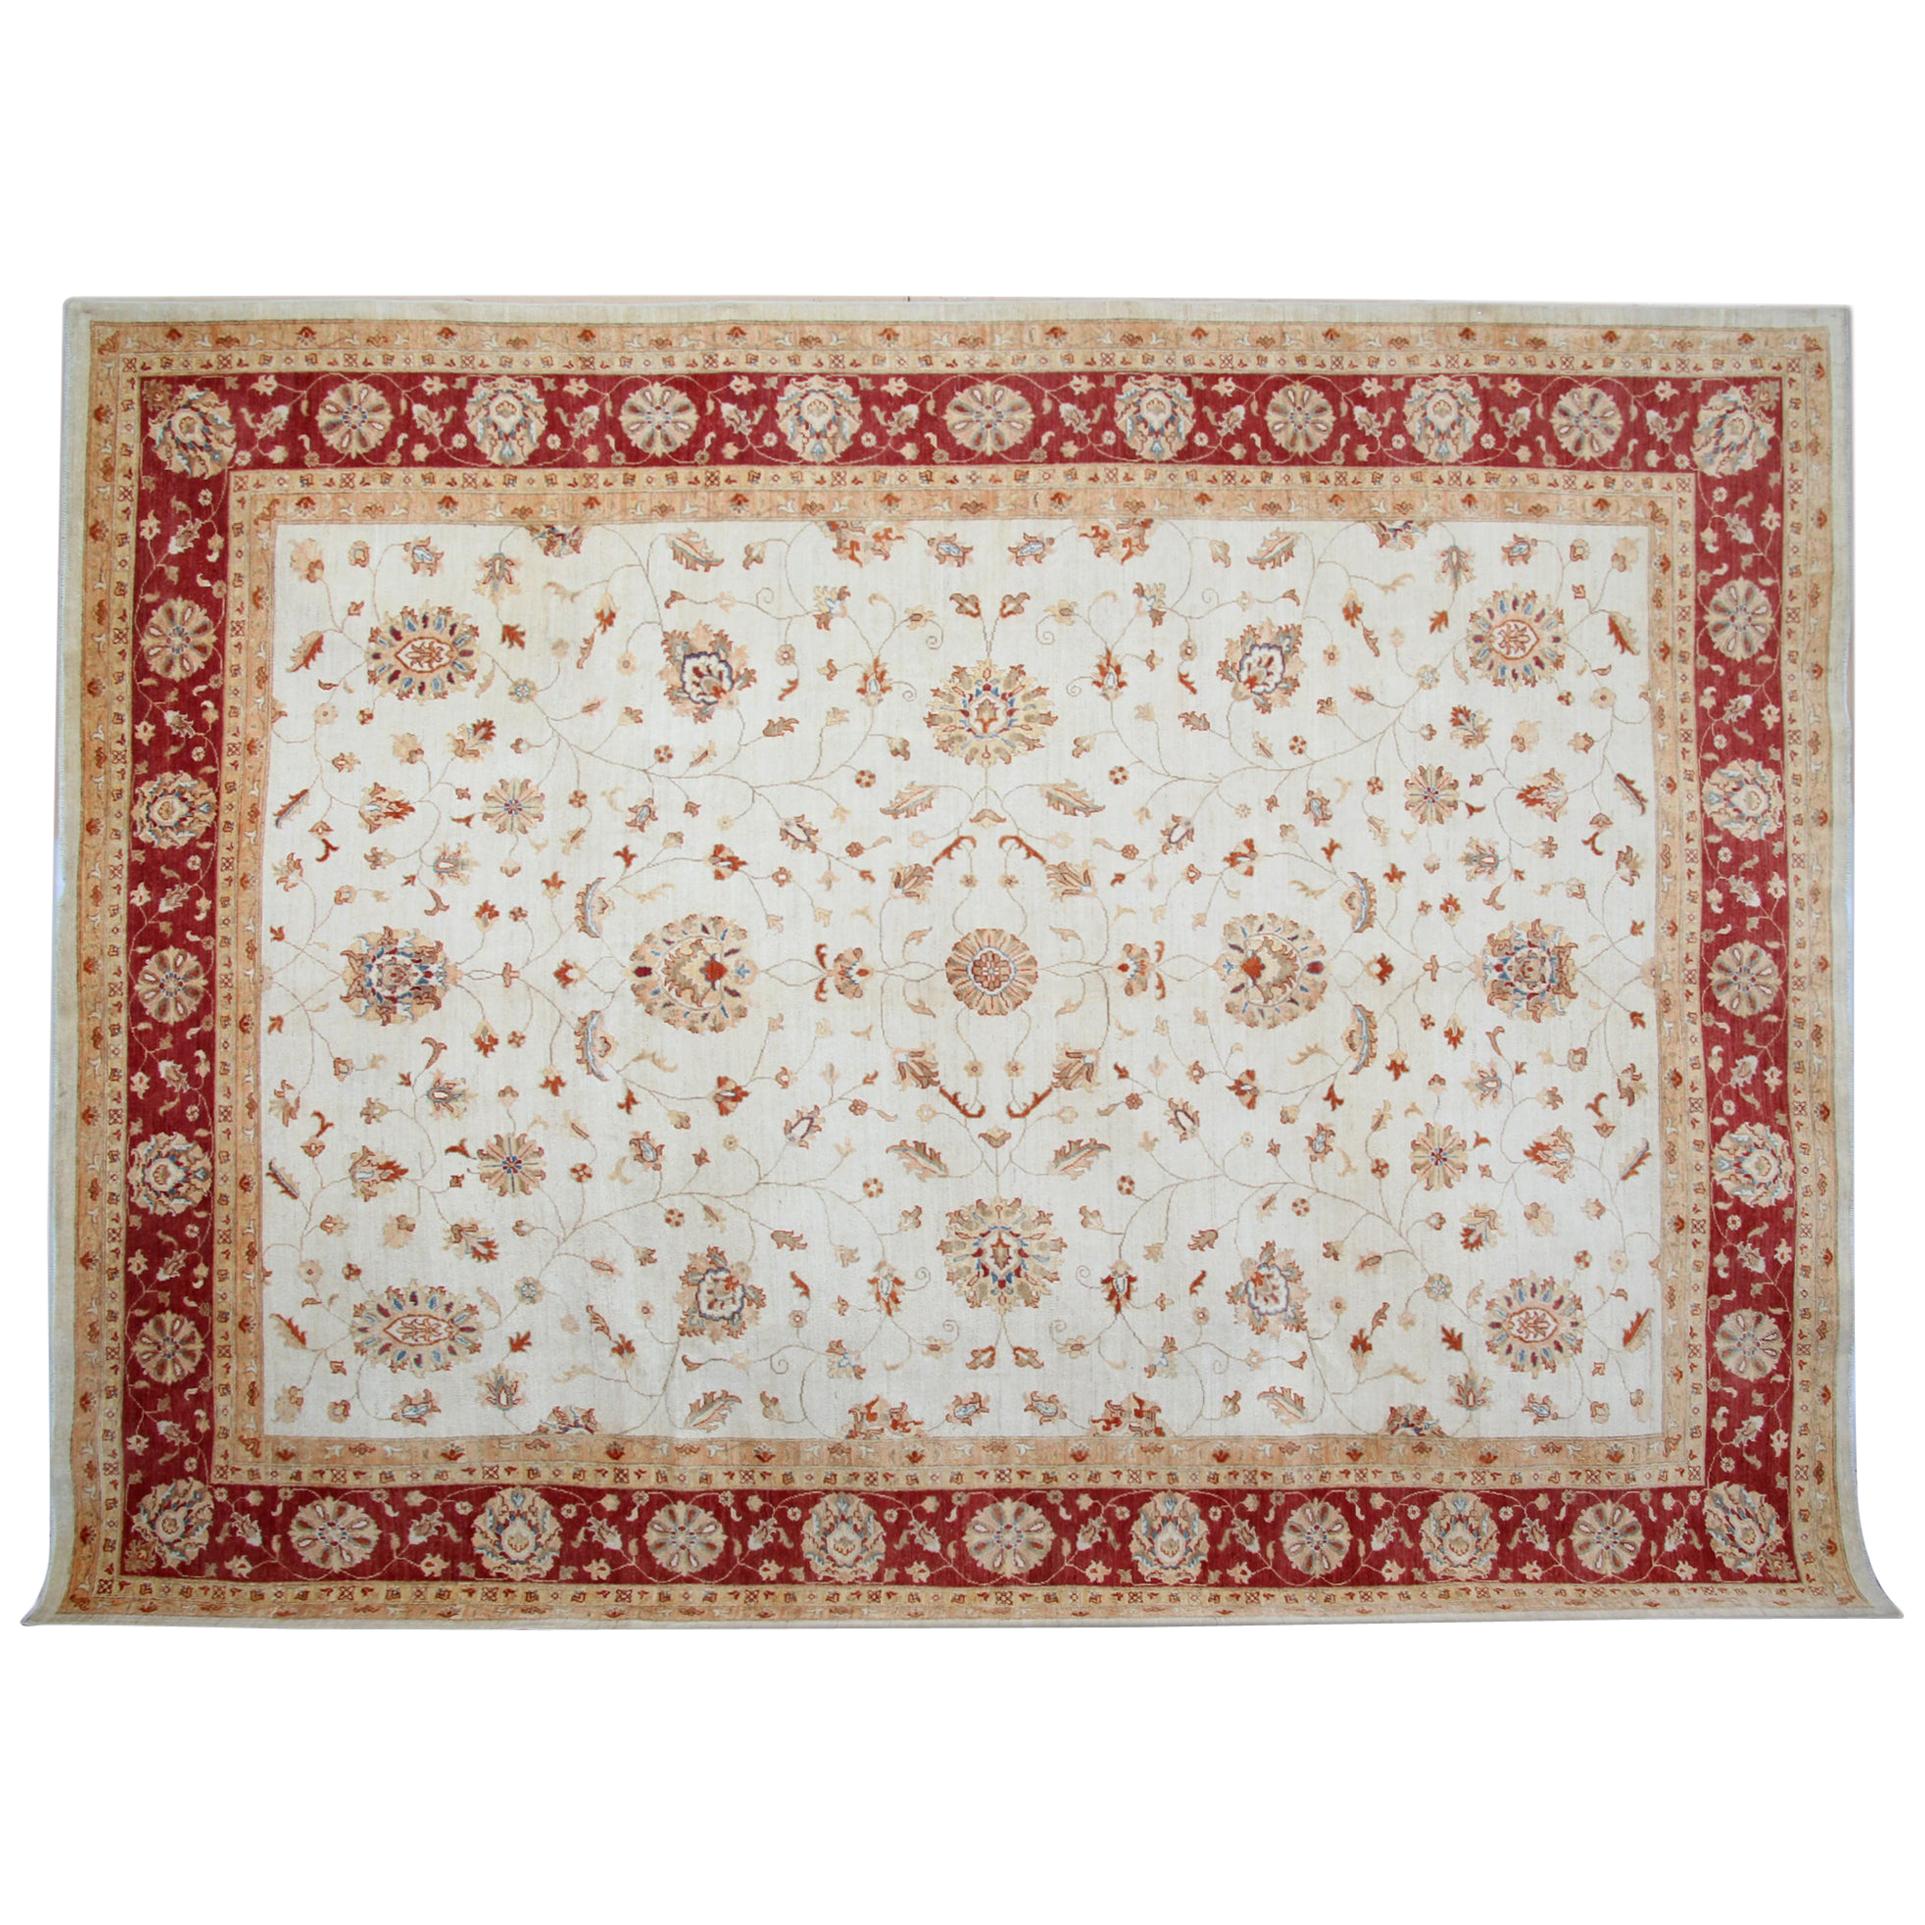 Handgefertigter Ziegler Sultanabad-Teppich, Wohnzimmerteppich aus cremefarbener Wolle